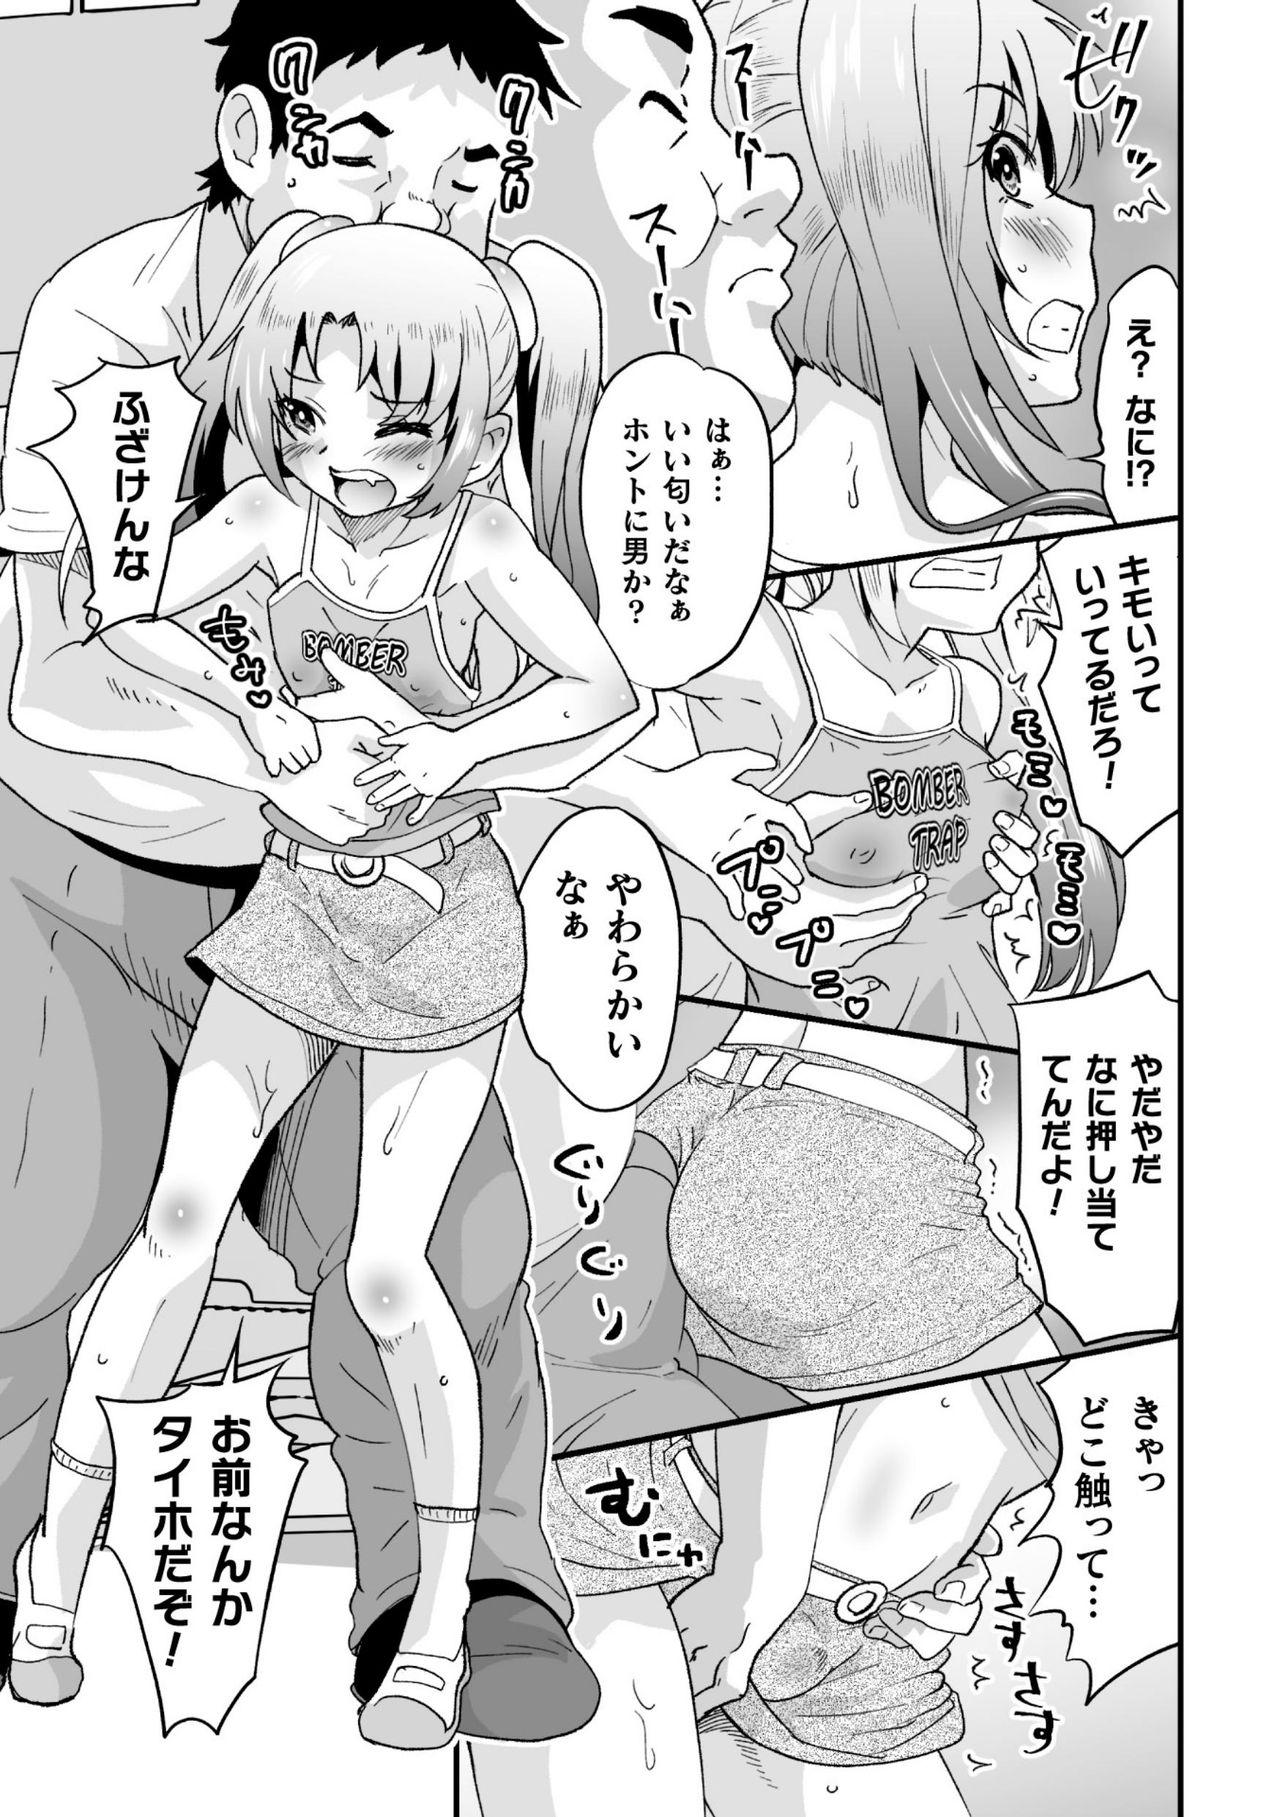 2D Comic Magazine Mesugaki Otokonoko Seisai Ikiru Shiriana o Wakarase Bou de Goshidou Gobentatsu! Vol. 2 50